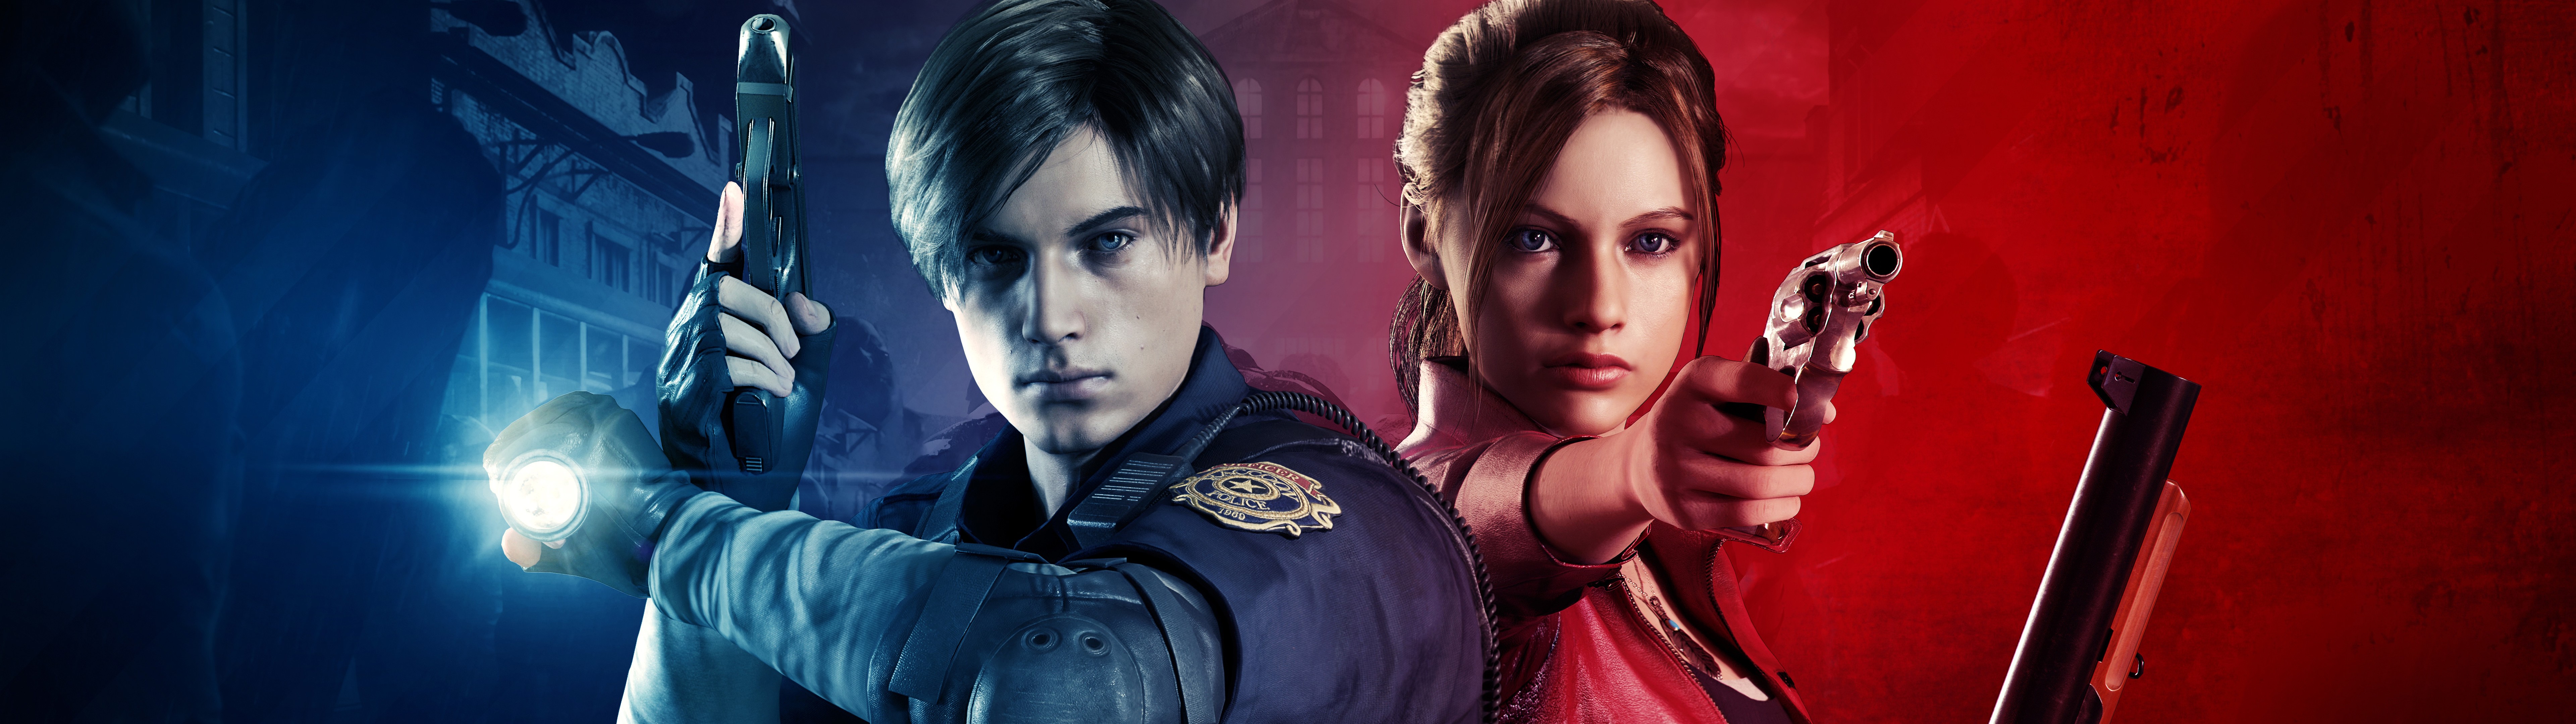 Kennedy, Claire Redfield, Resident Evil 2, 8k, - Resident Evil 2 Header - HD Wallpaper 